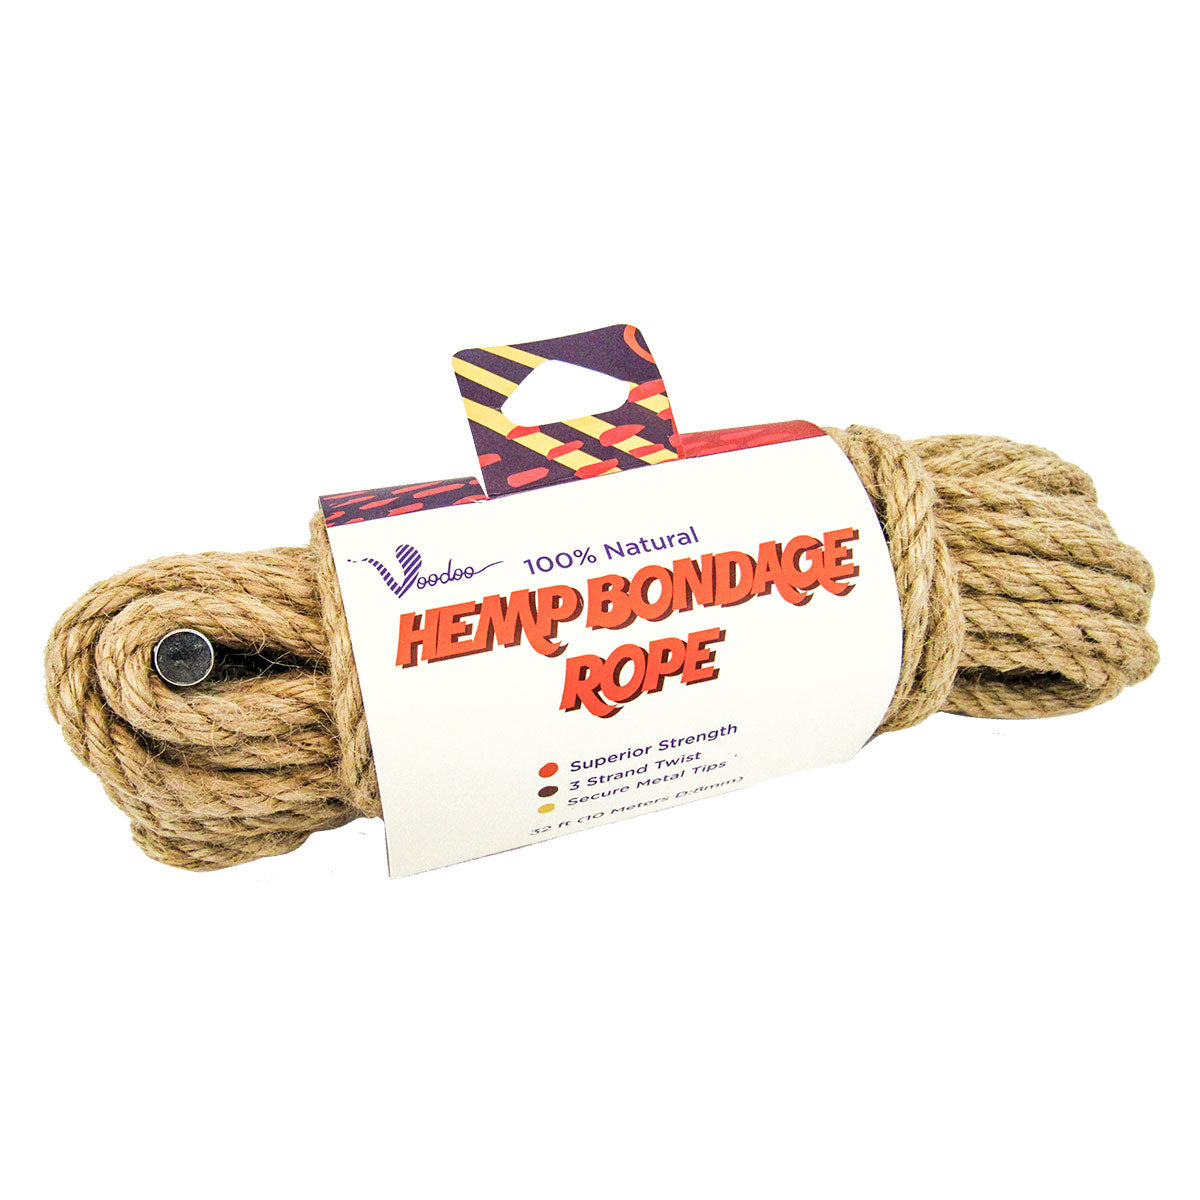 Voodoo Hemp Bondage Rope 10m